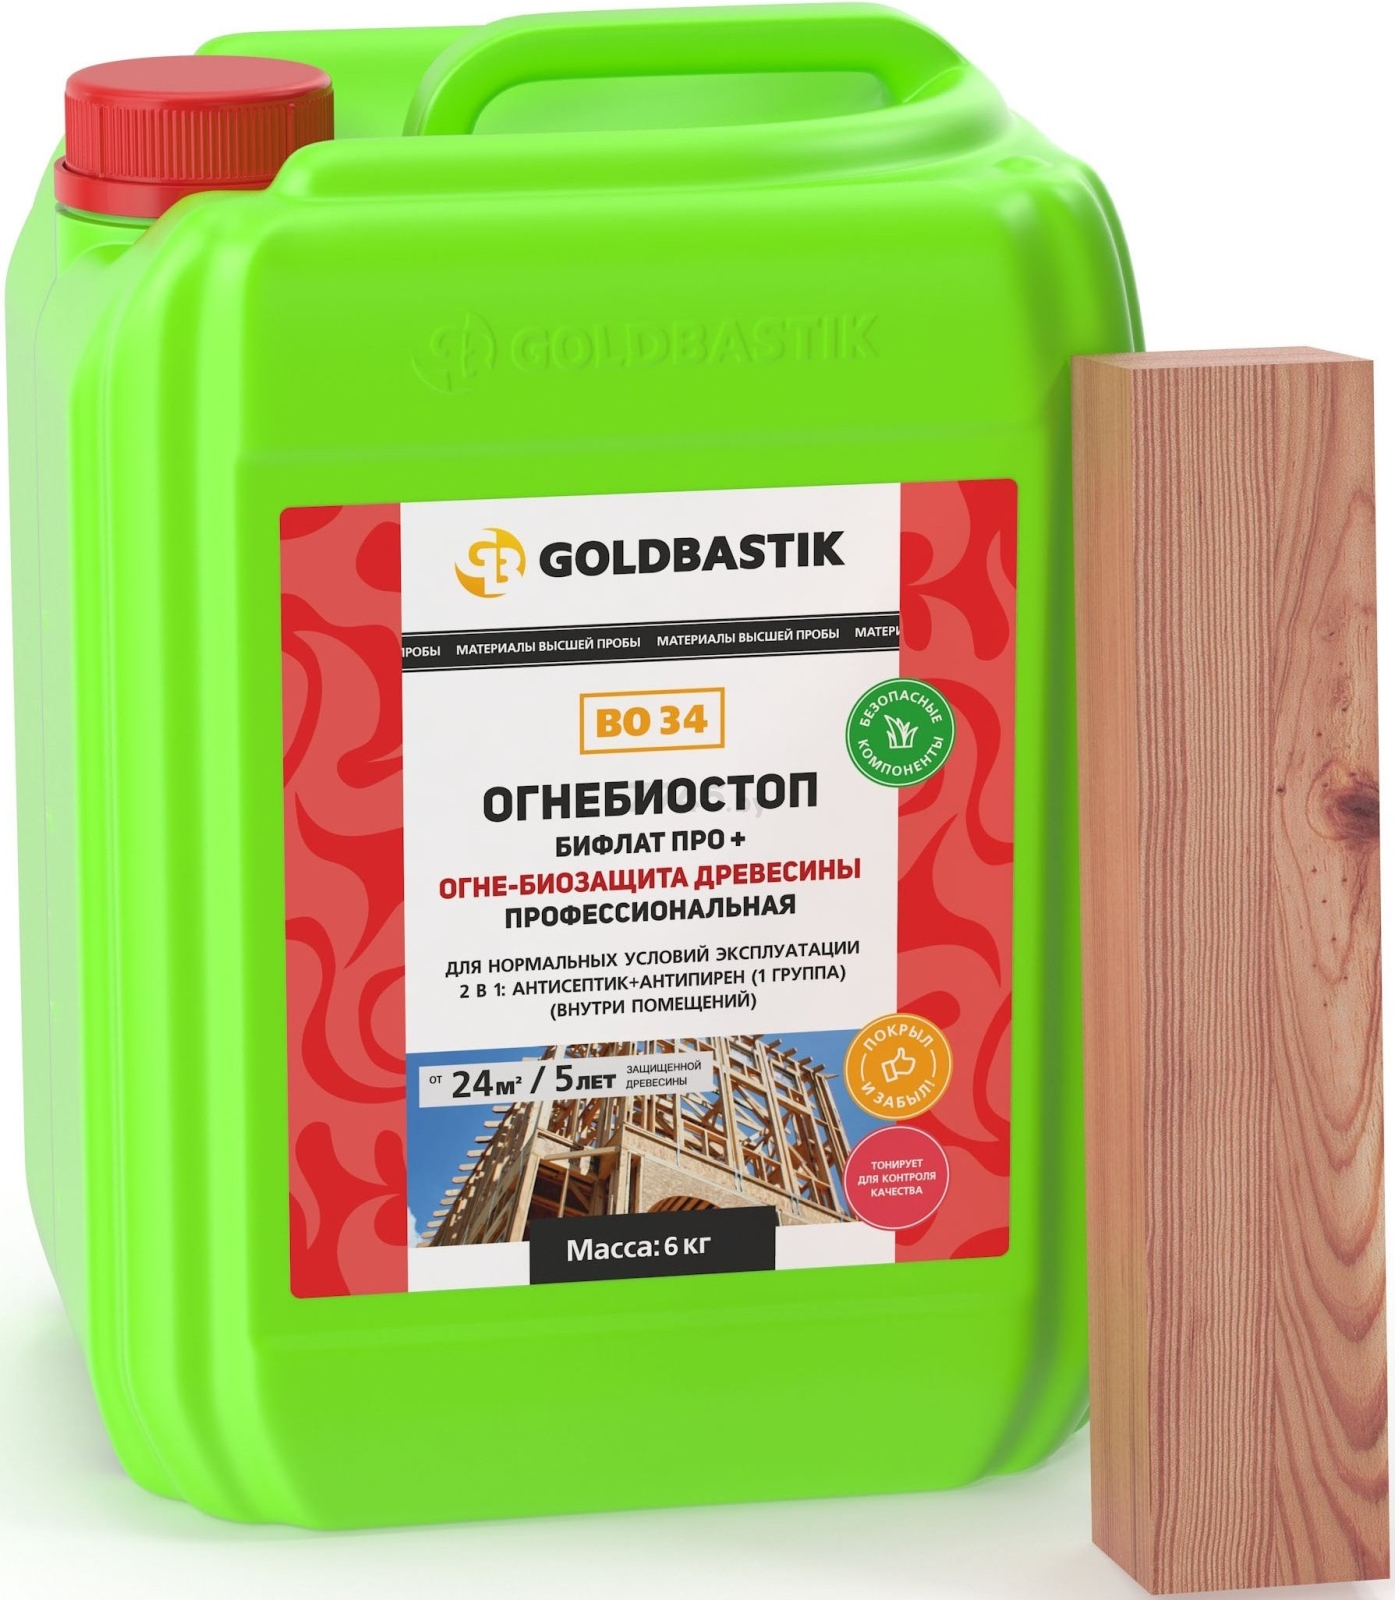 Антисептик GOLDBASTIK Бифлат Про+ 6 кг (BO 34)